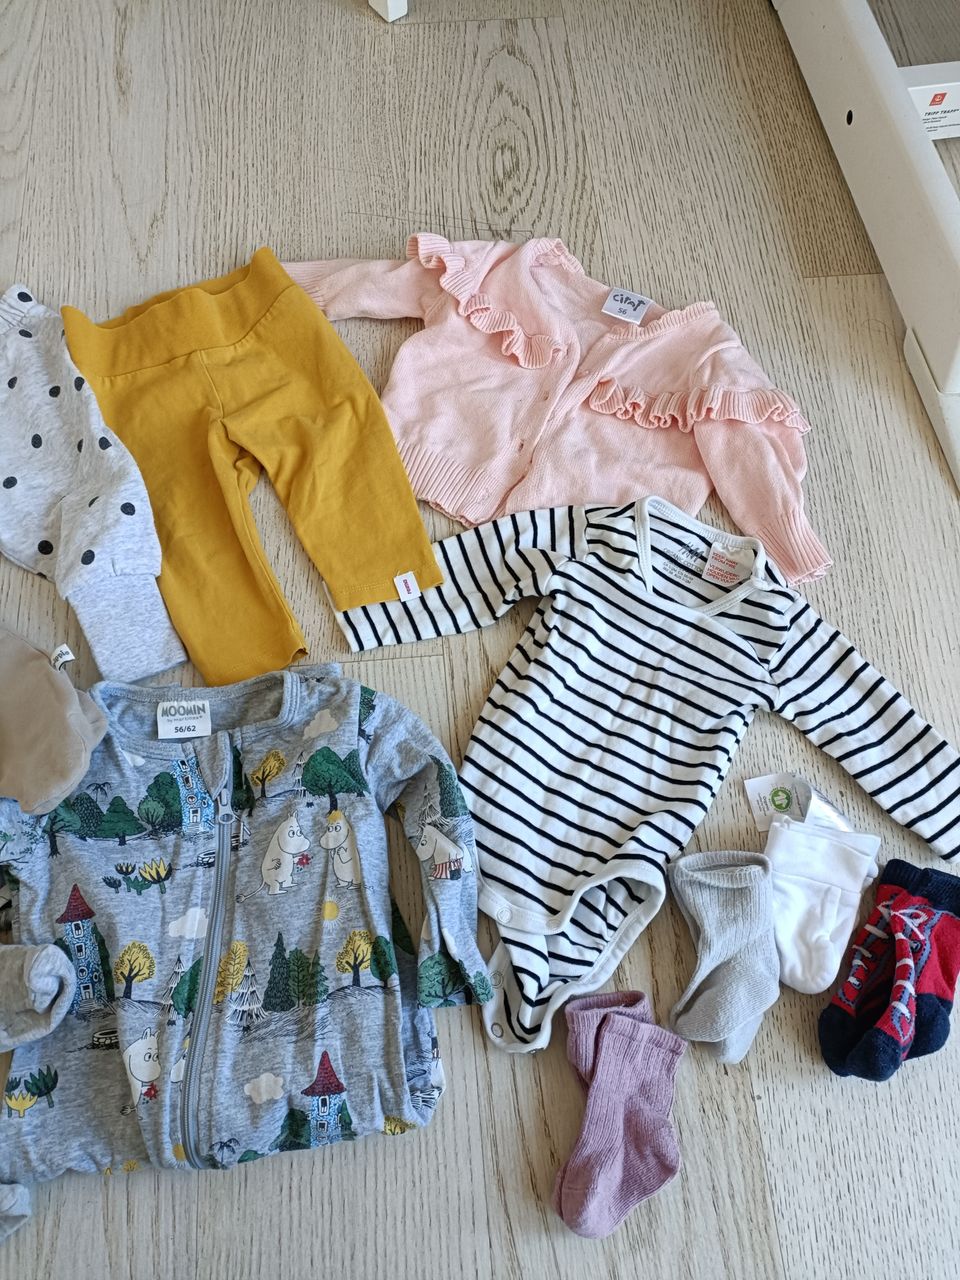 Vauvan vaatteita koko 50-56